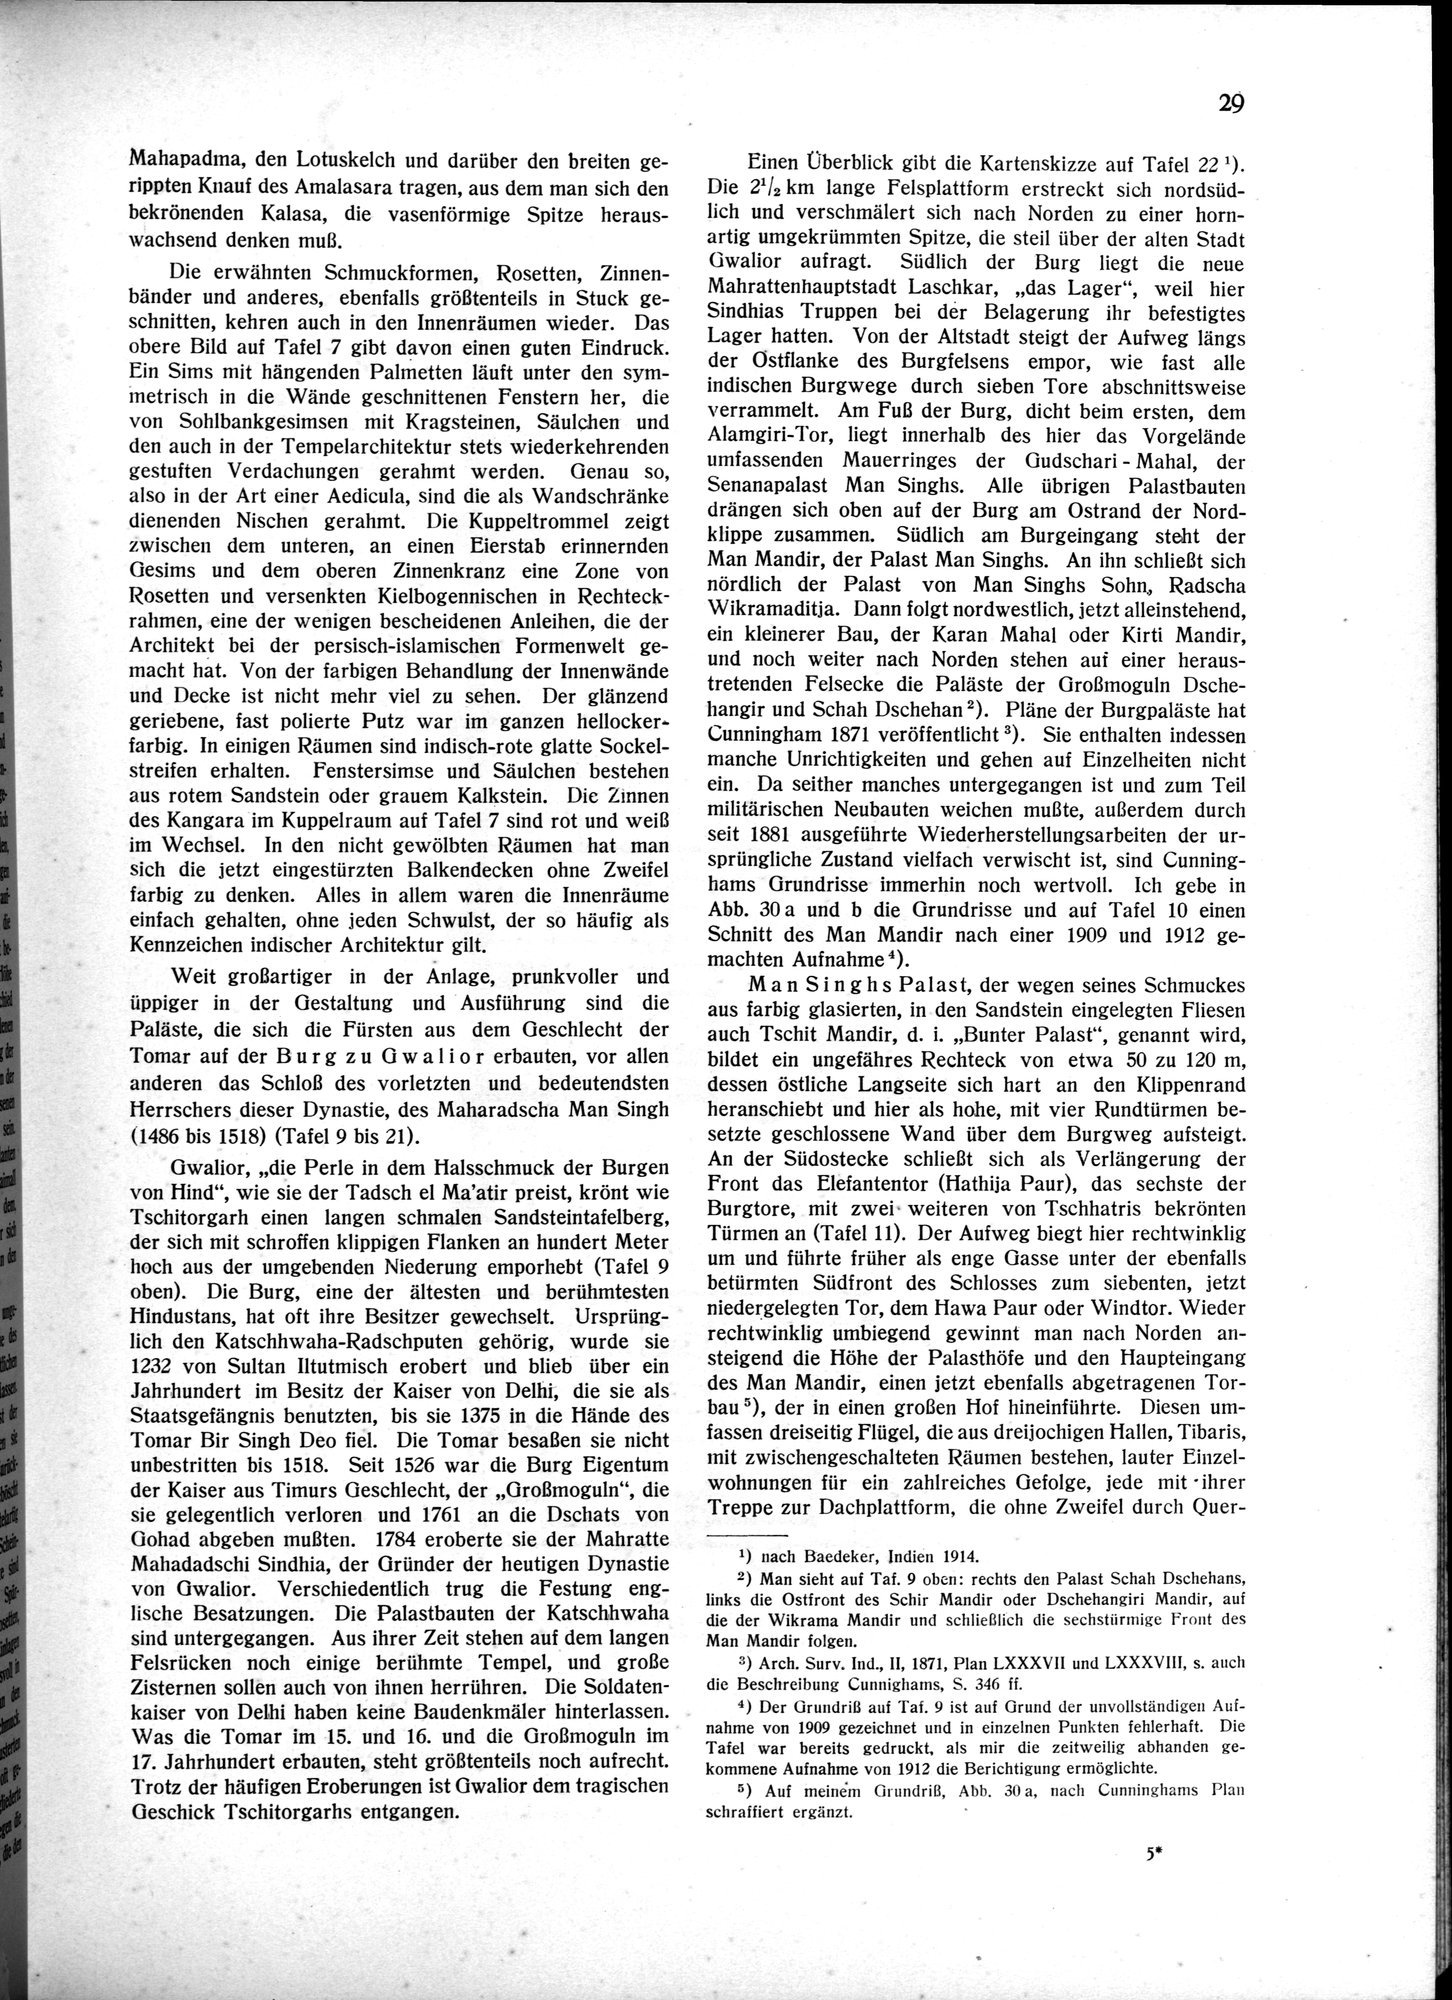 Indische Palaste und Wohnhauser : vol.1 / Page 39 (Grayscale High Resolution Image)